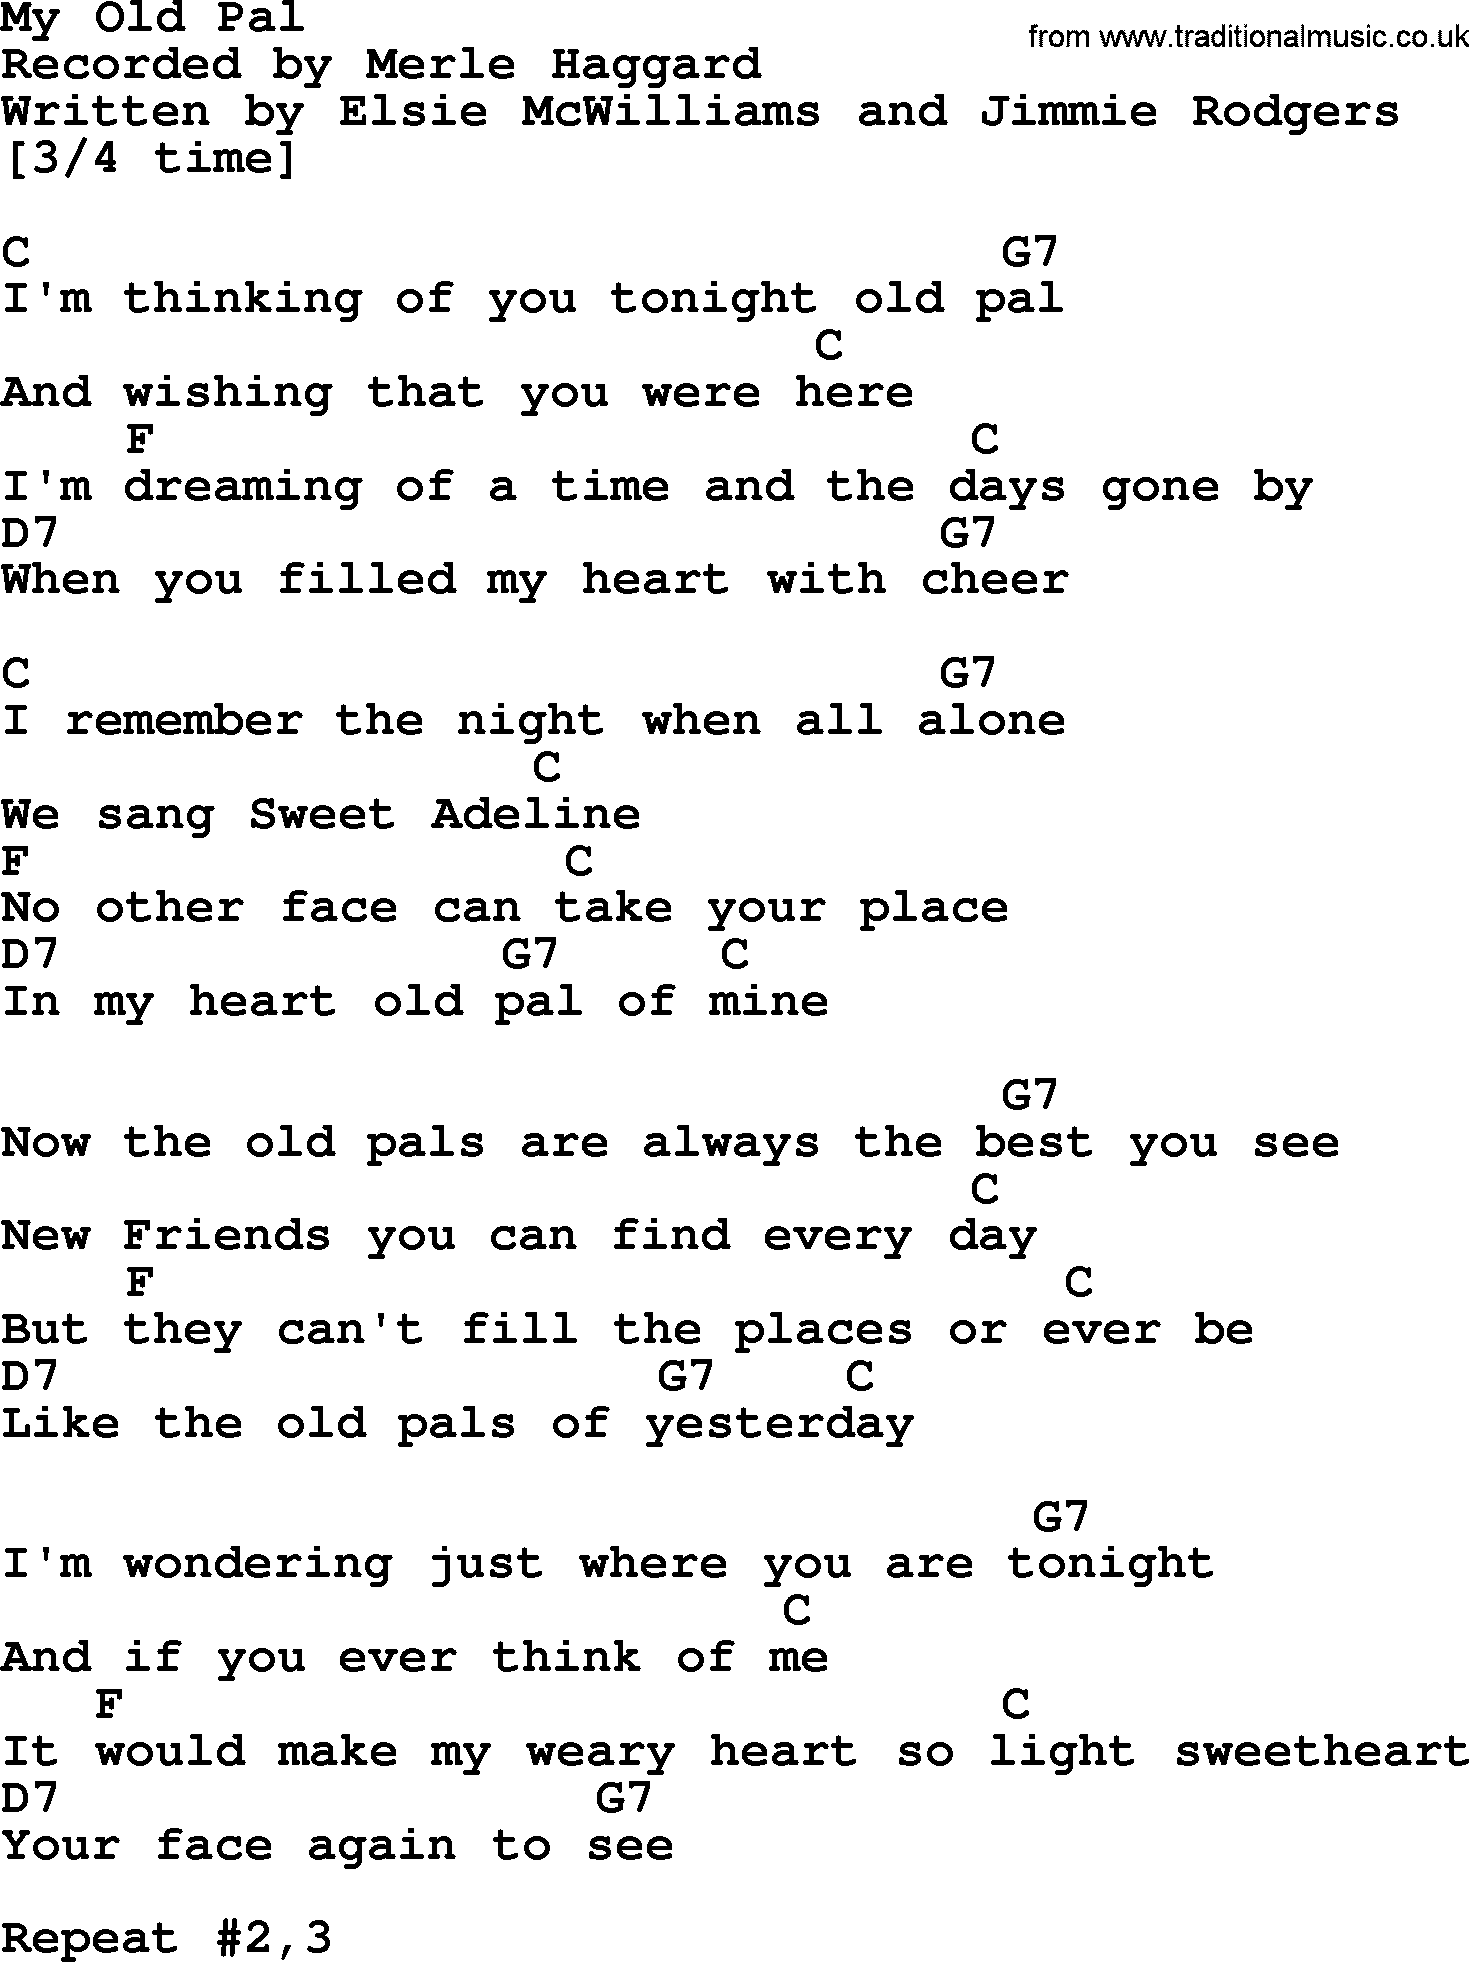 Merle Haggard song: My Old Pal, lyrics and chords